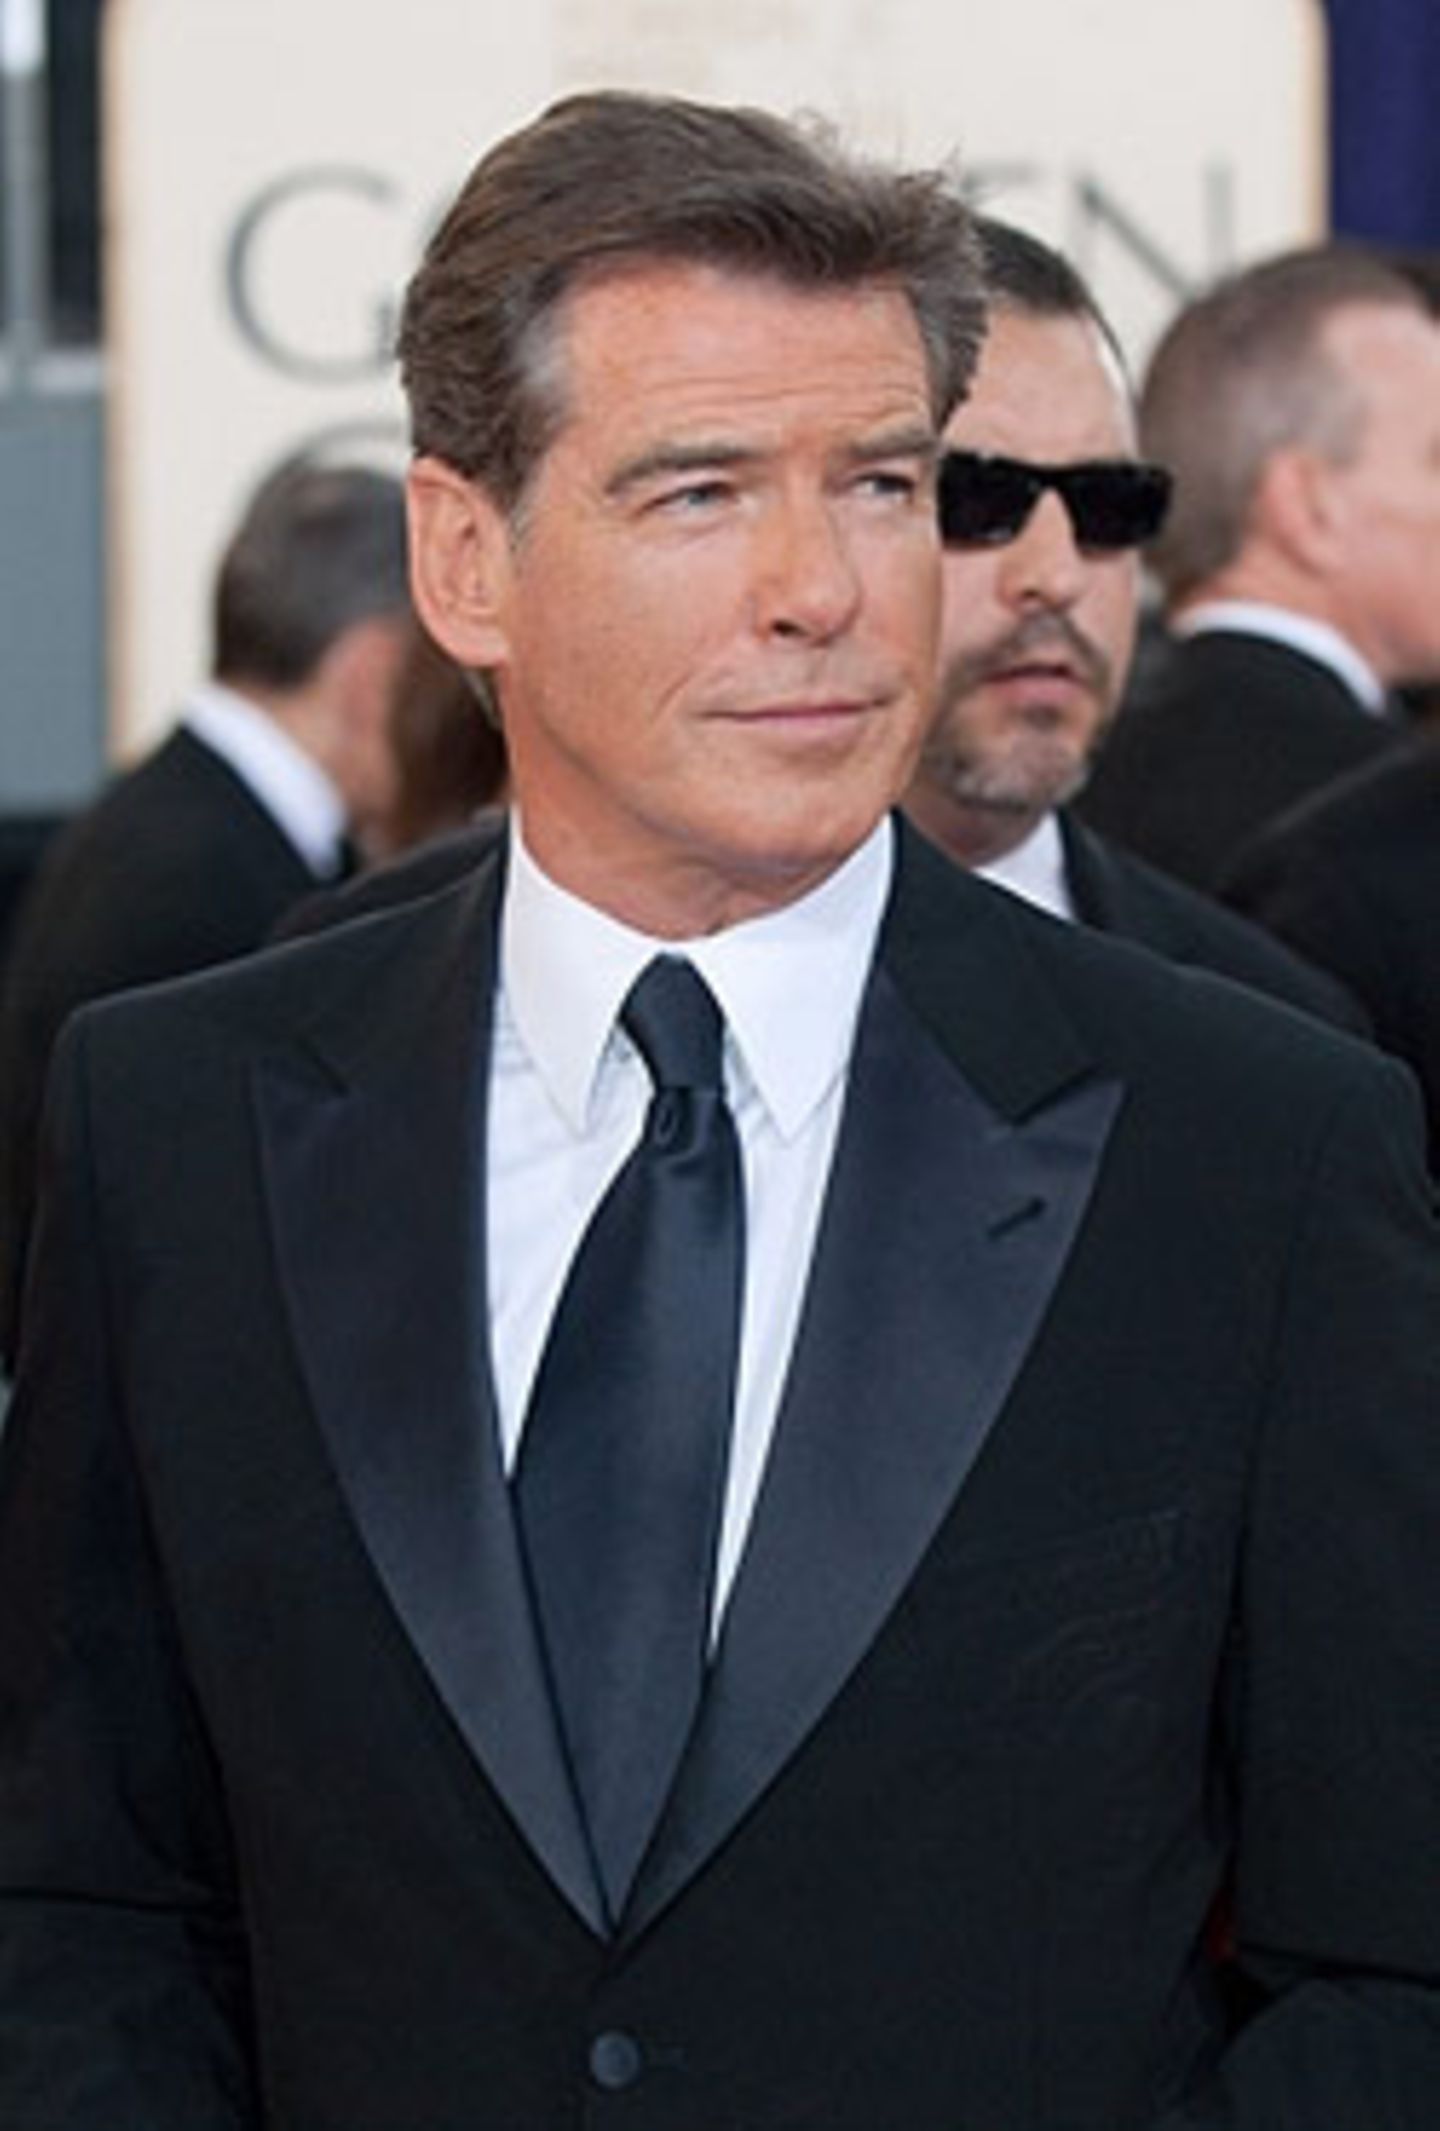 Als Ex-Bond weiß Pierce Brosnan natürlich, wie man sich stilvoll kleidet.